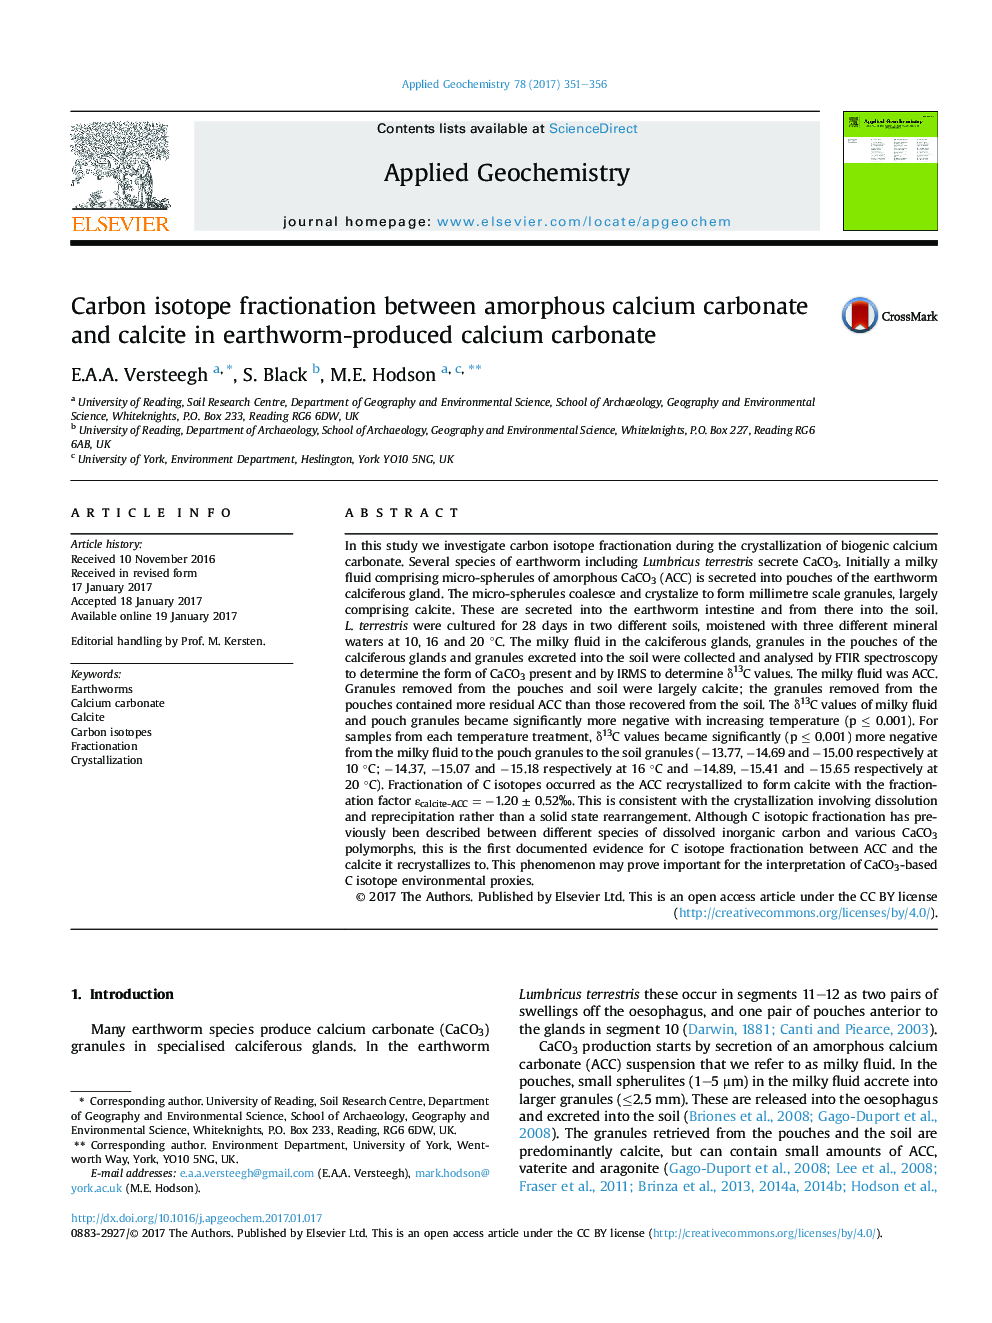 کسر اکسید کربن بین کربنات کلسیم آمورف و کلسیت در کربنات کلسیم تولید شده توسط کرم خاکی 